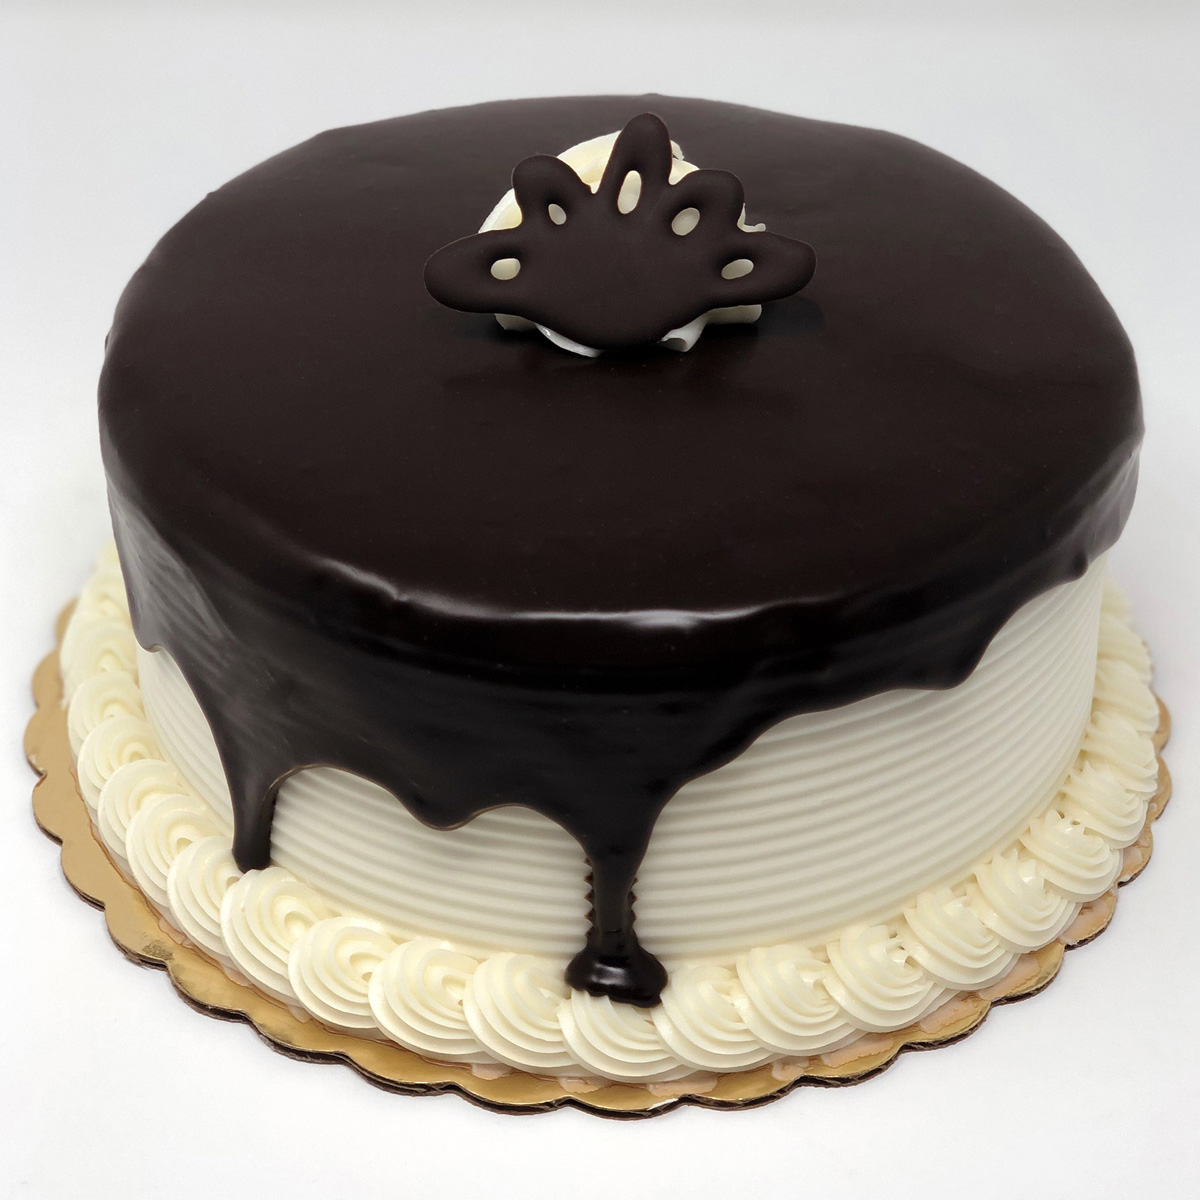 Order Tuxedo Dessert Cake food online from Merritt Bakery store, Tulsa on bringmethat.com